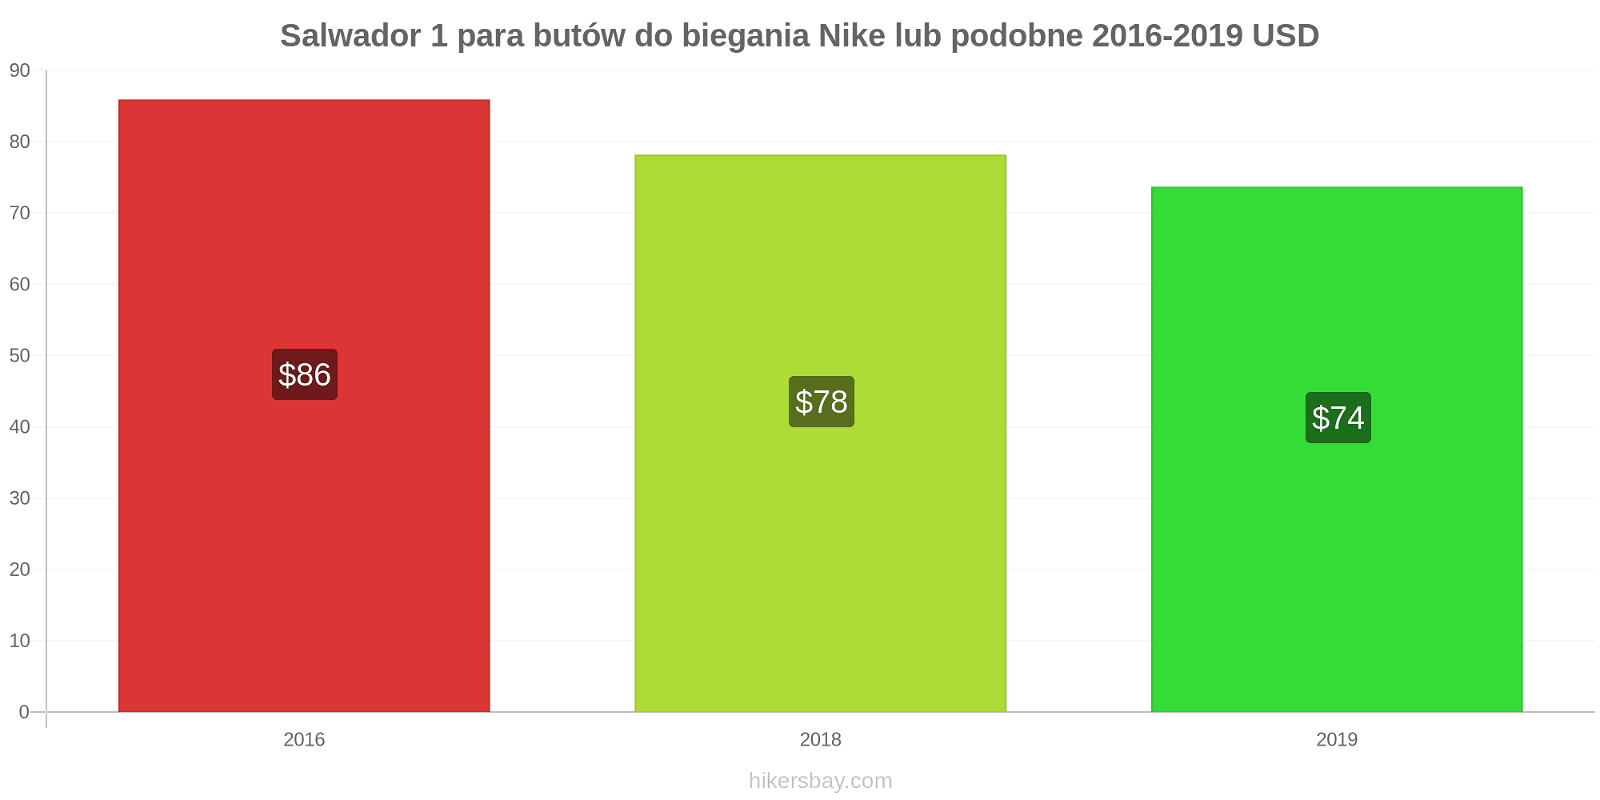 Salwador zmiany cen 1 para butów do biegania Nike lub podobne hikersbay.com